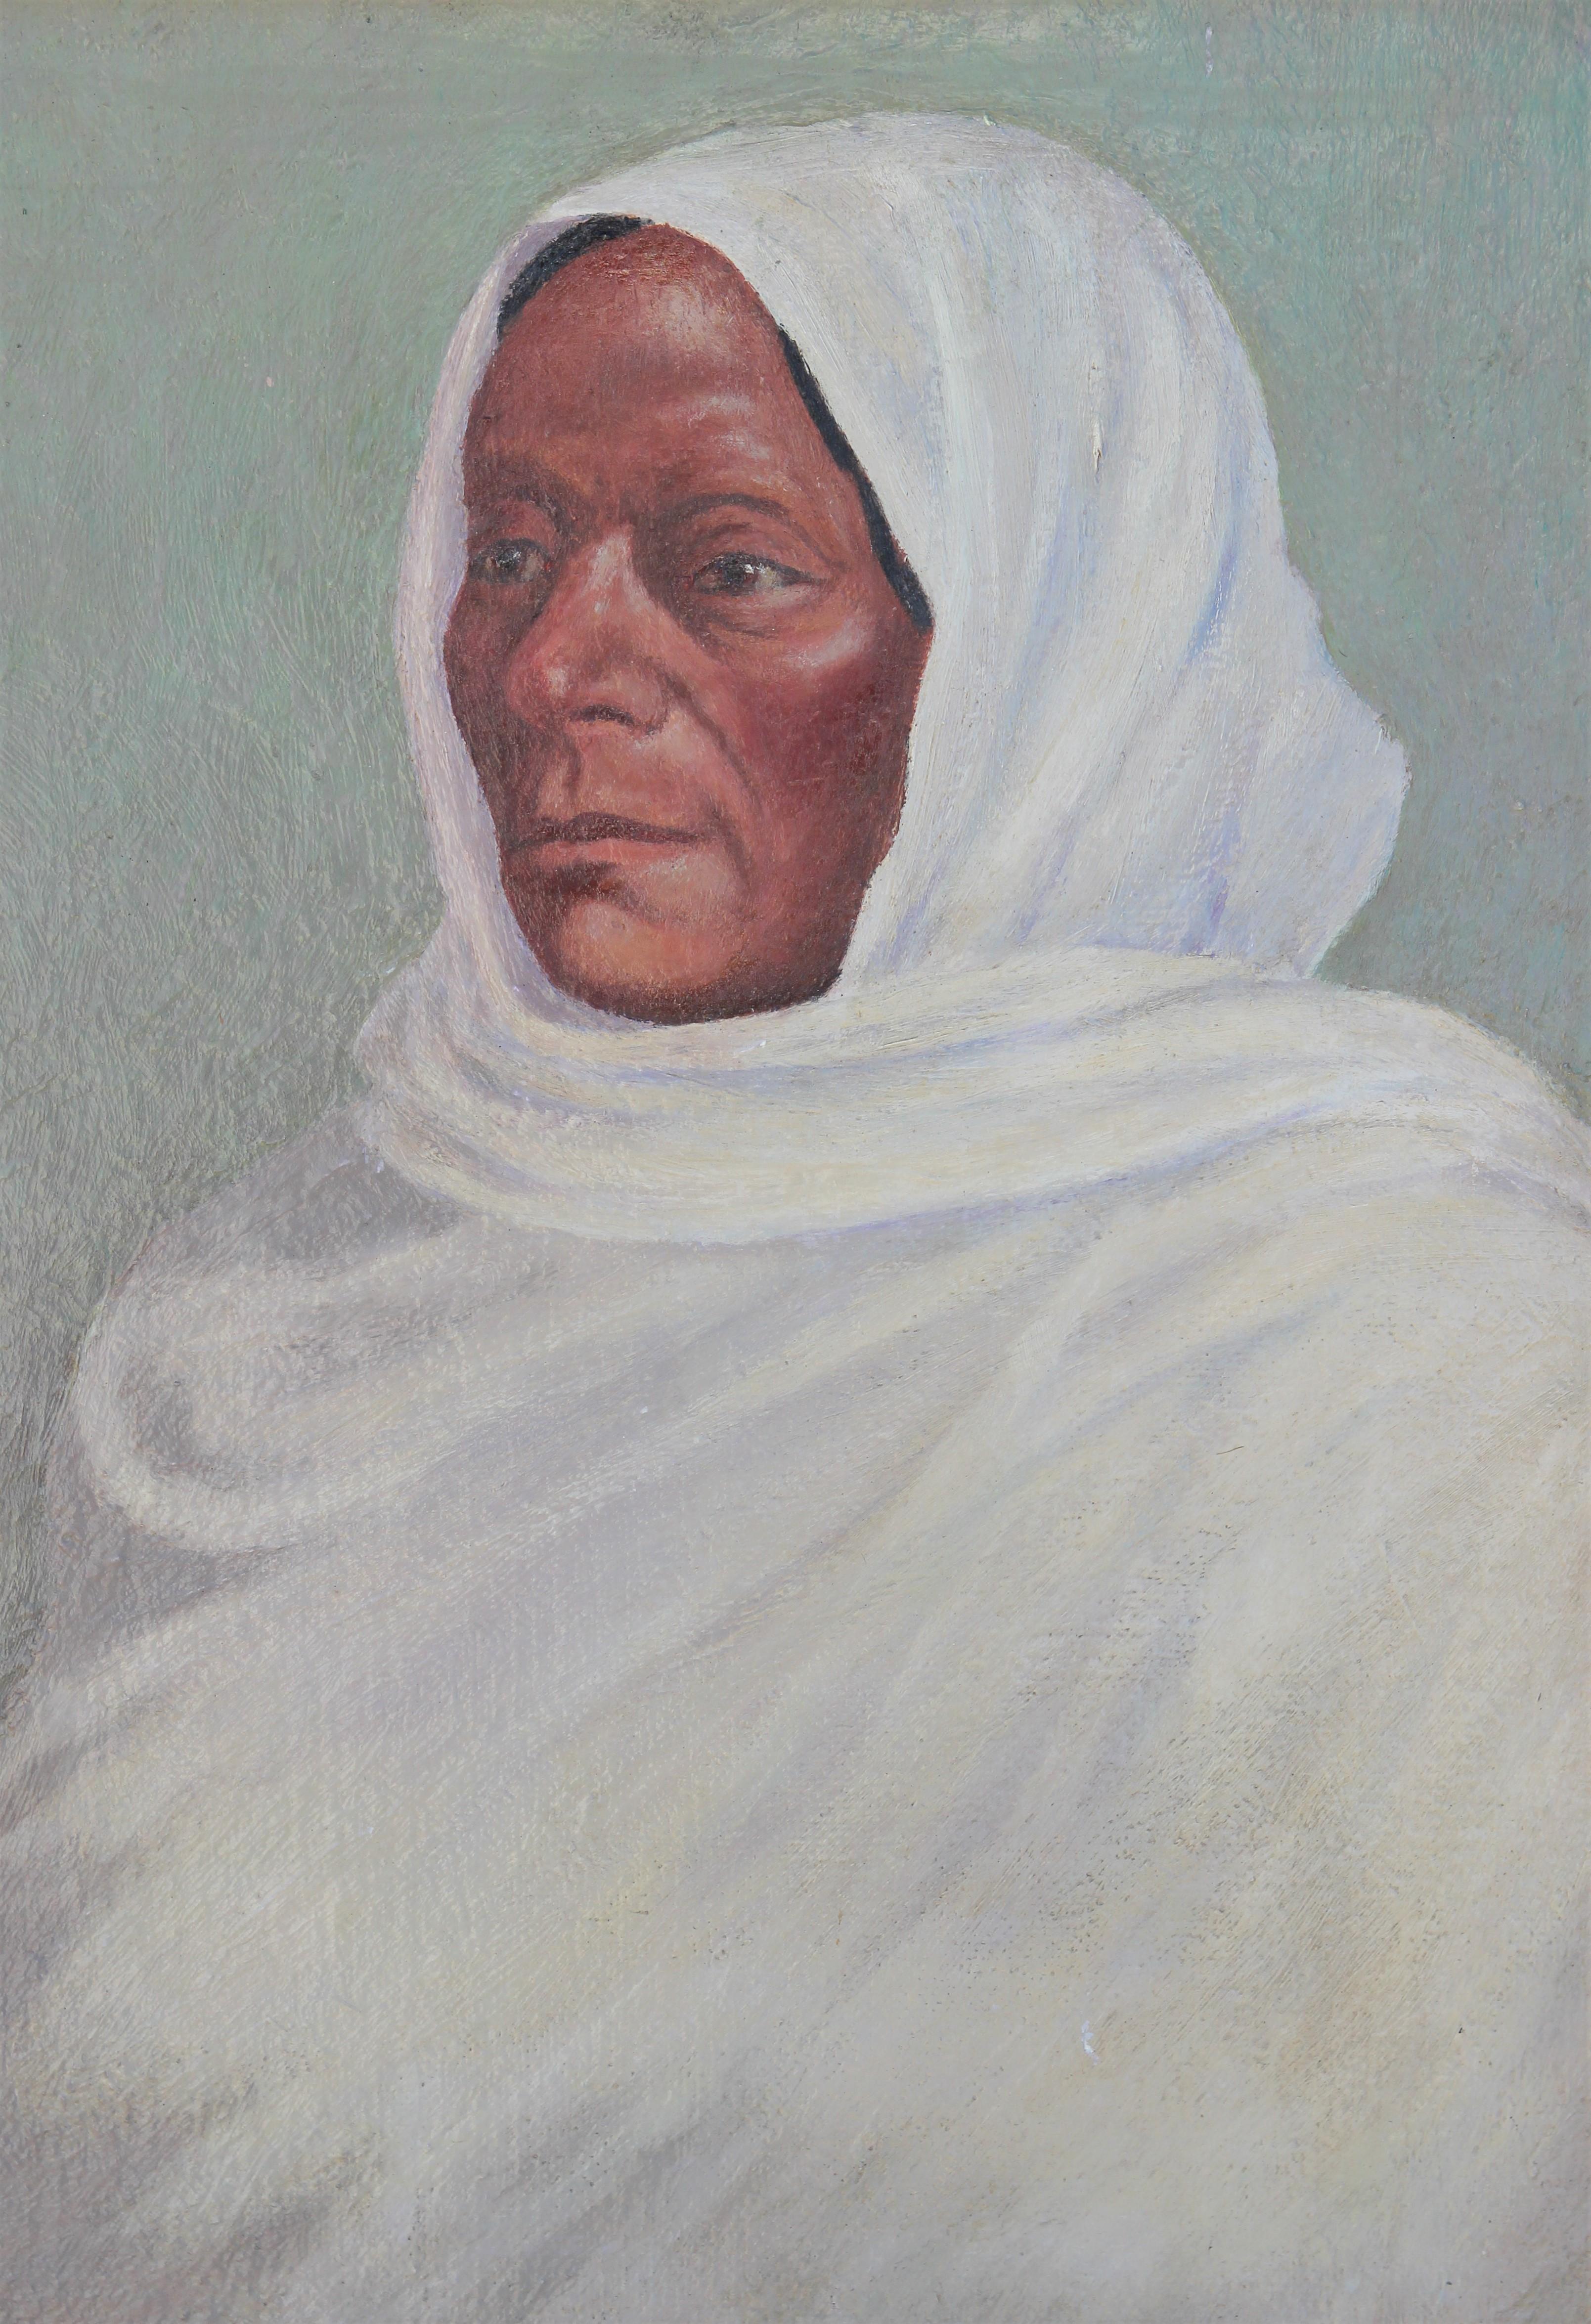 Portrait réaliste de femme Tao aux tons verts pastel dans un bandeau blanc - Réalisme Painting par Charles Kern Fiedler